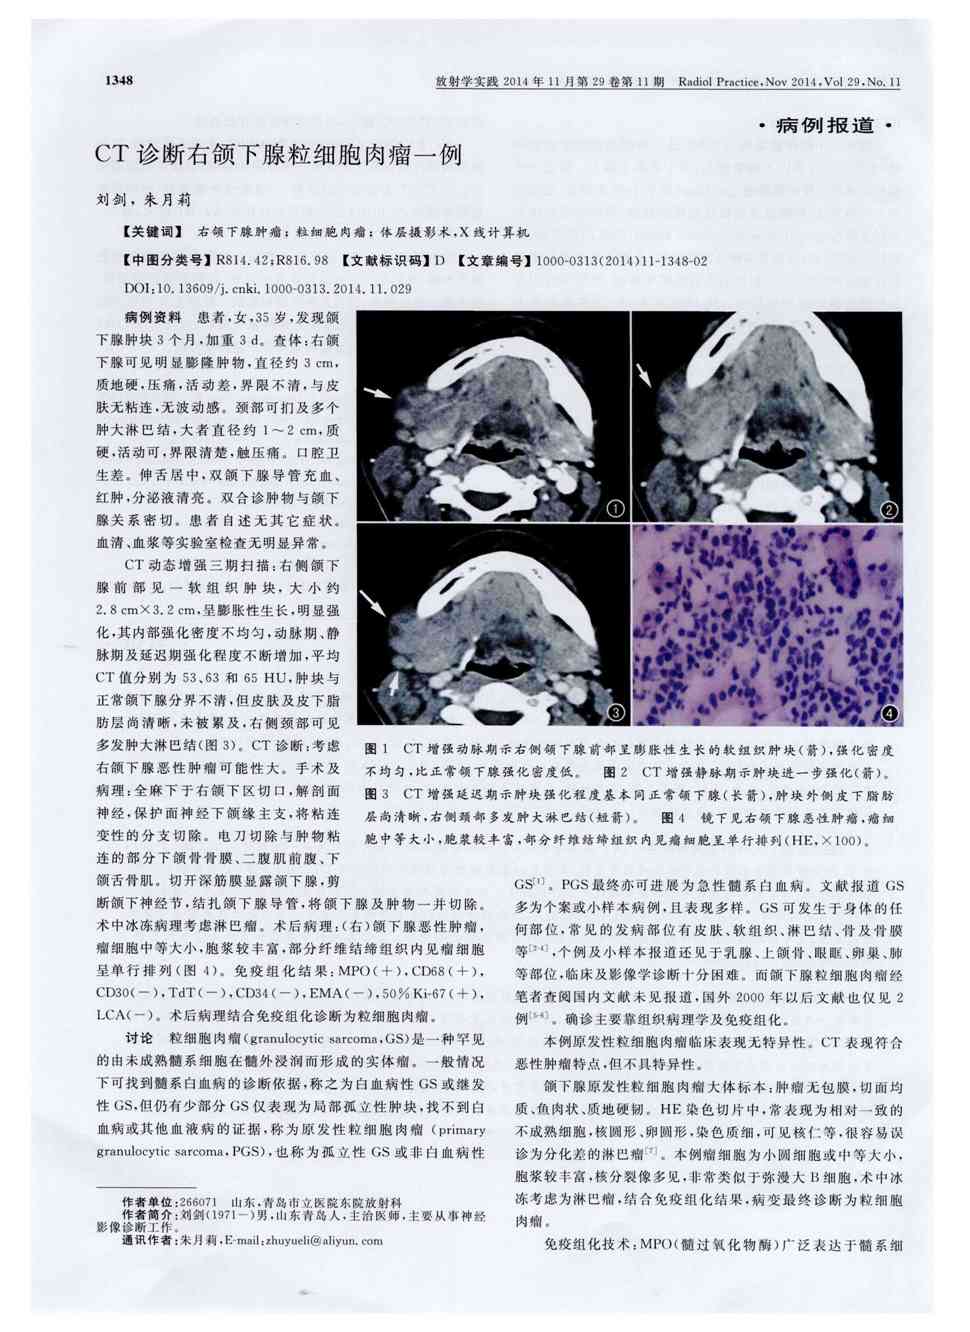 期刊ct诊断右颌下腺粒细胞肉瘤一例    病例资料患者,女,35岁,发现